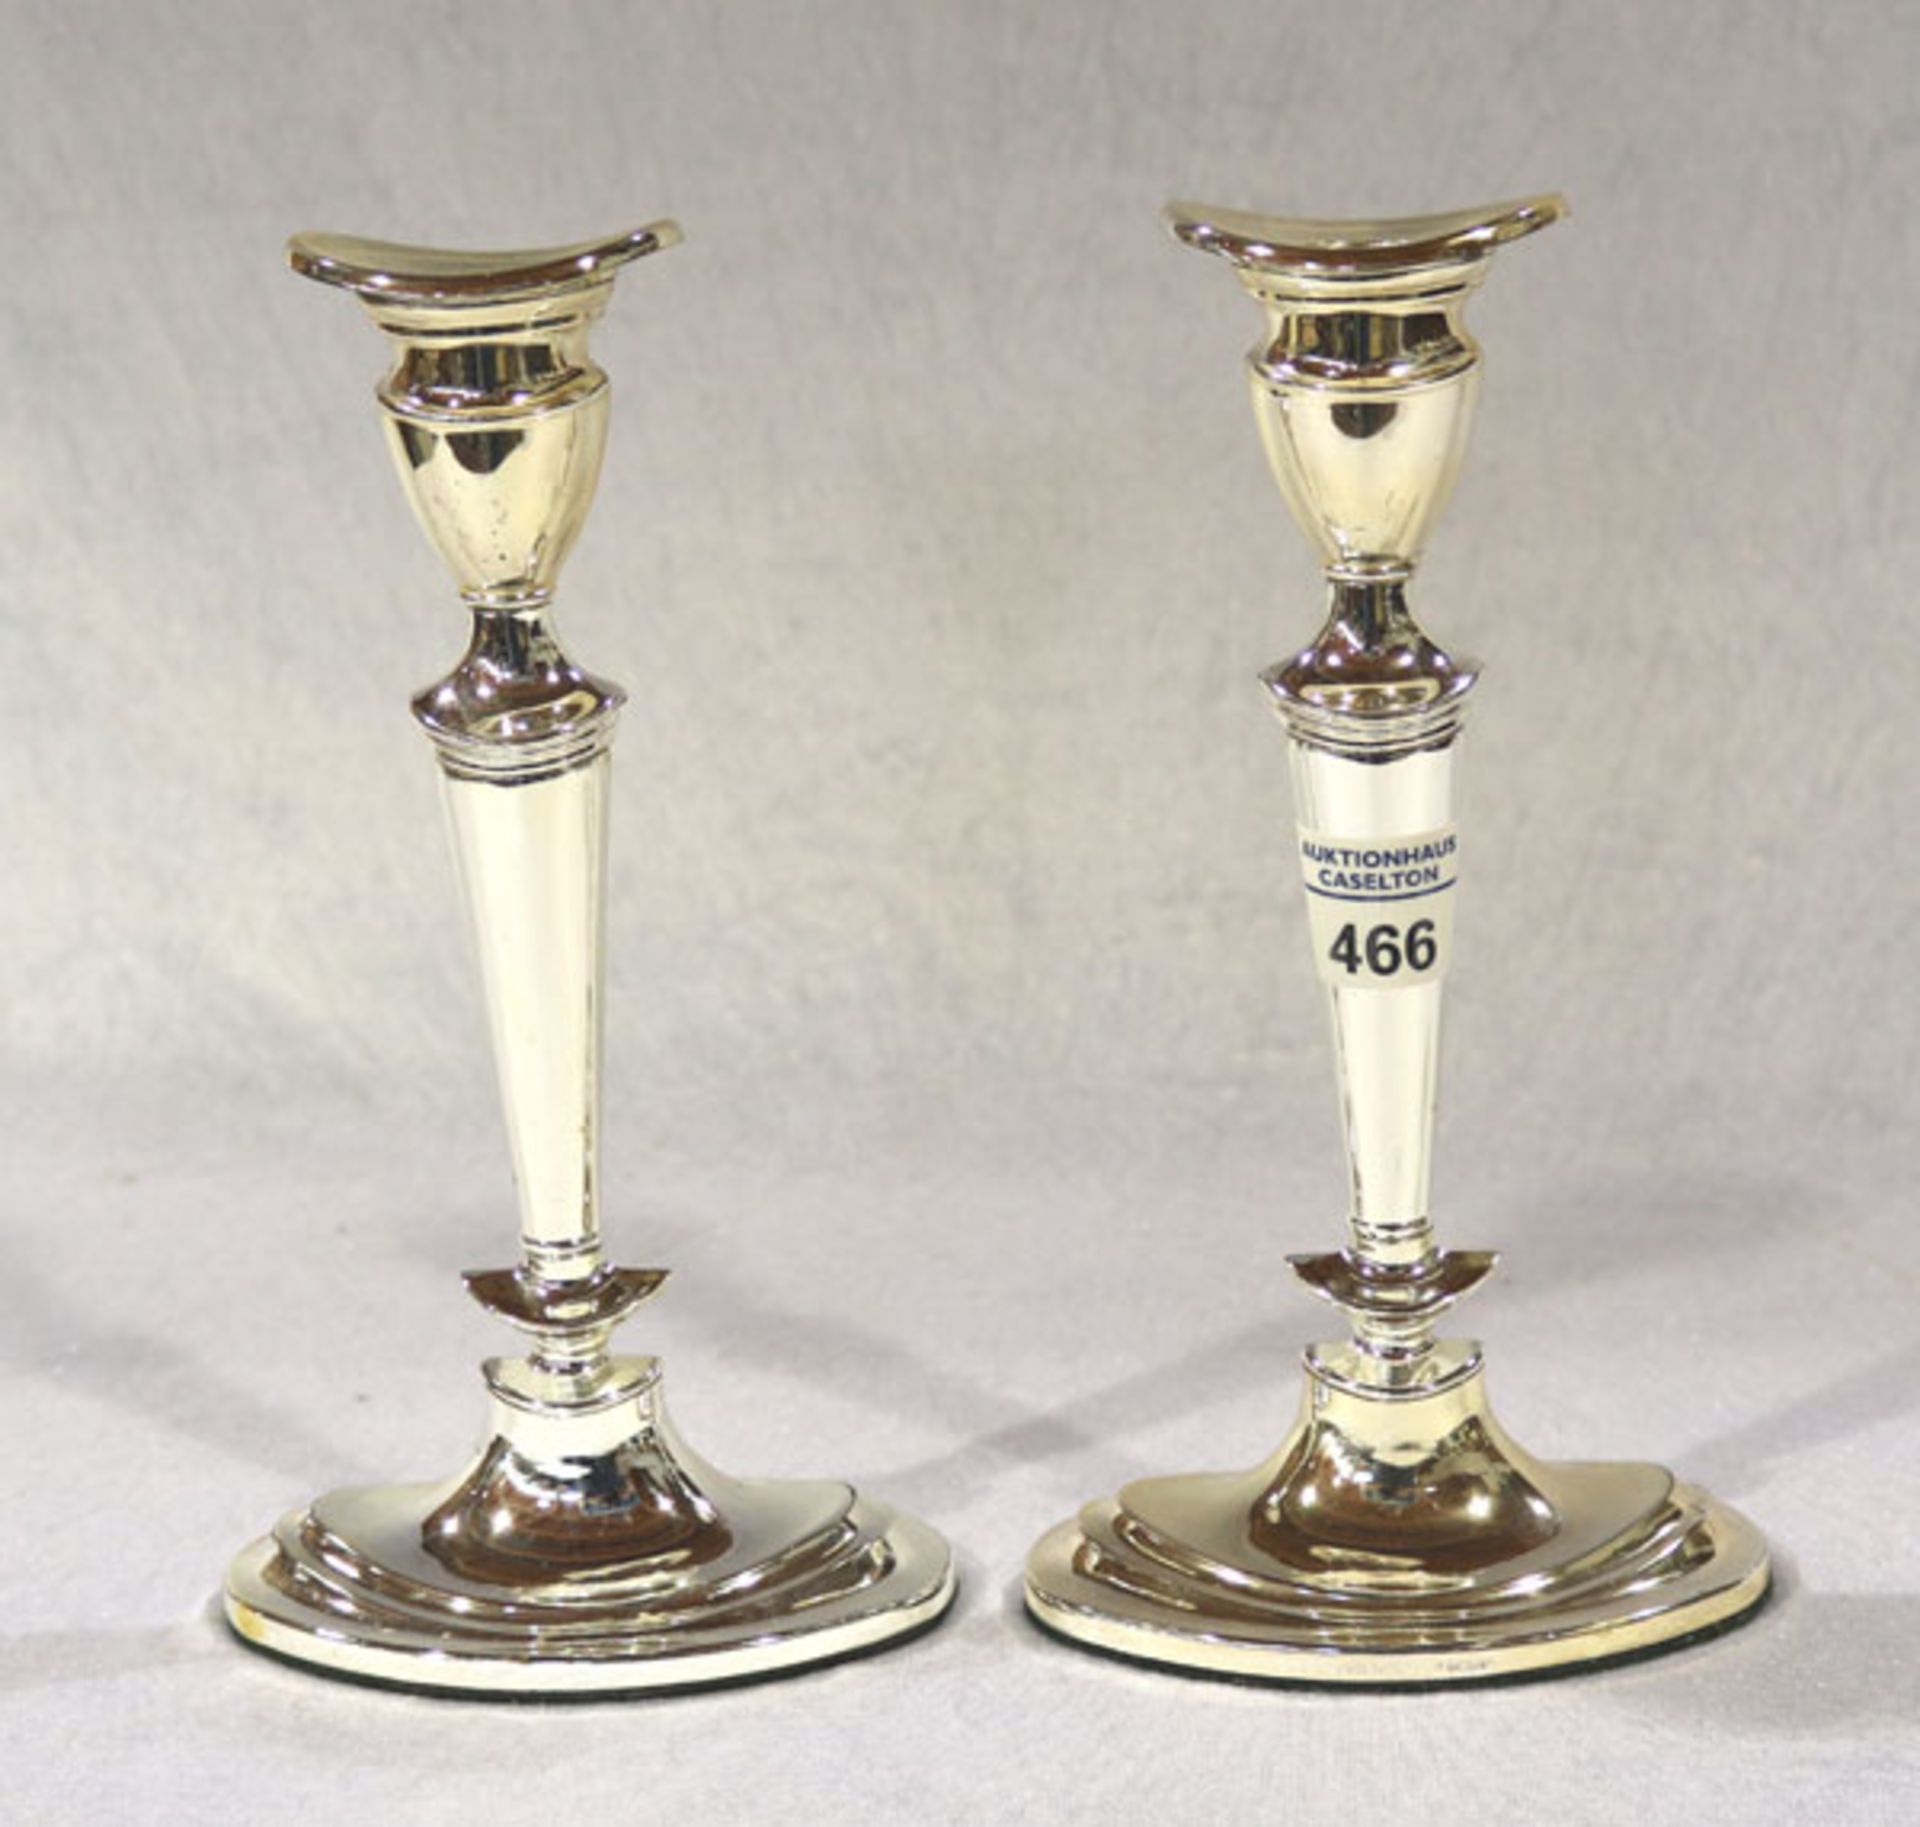 Paar versilberte Kerzenleuchter auf ovalem Stand, H 22 cm, Gebrauchsspuren